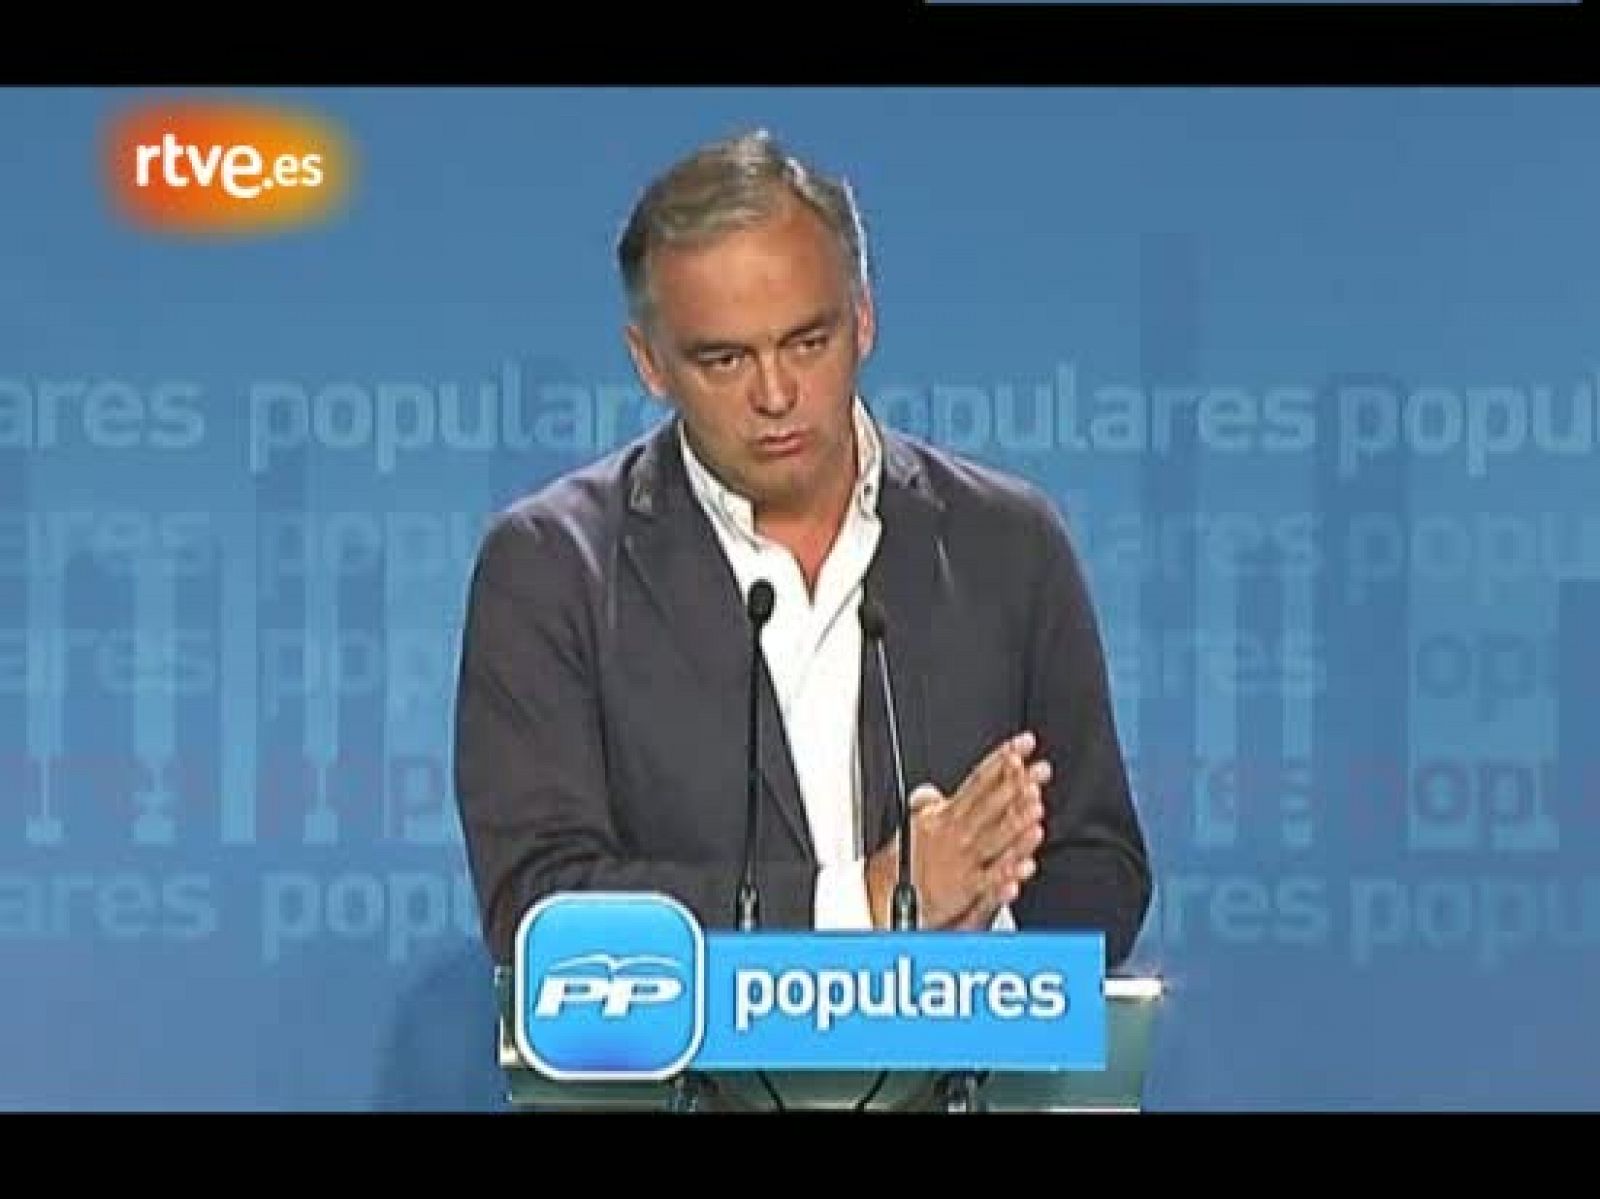 González Pons promete una campaña con "menos insultos" y "más programa"